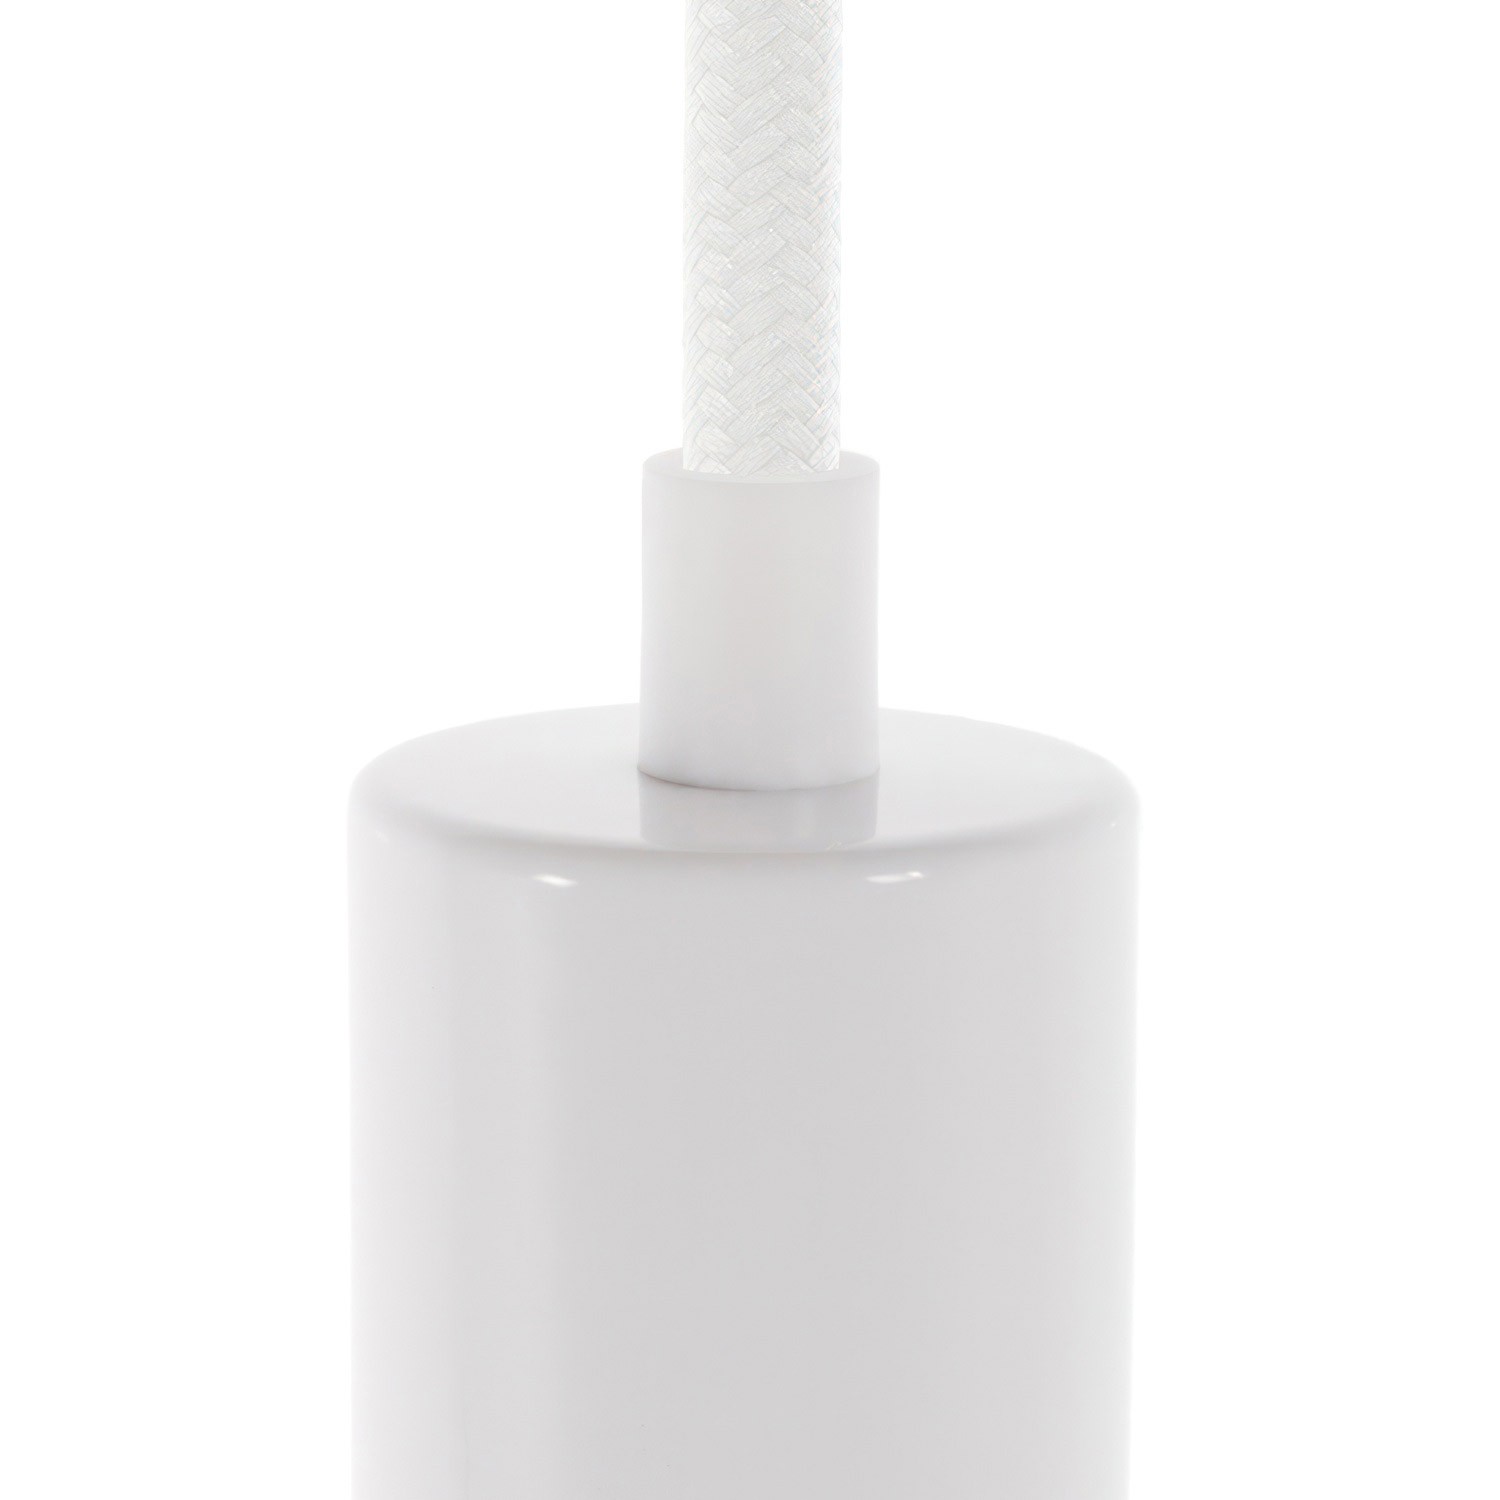 DRESS - Serre-câble en plastique blanc